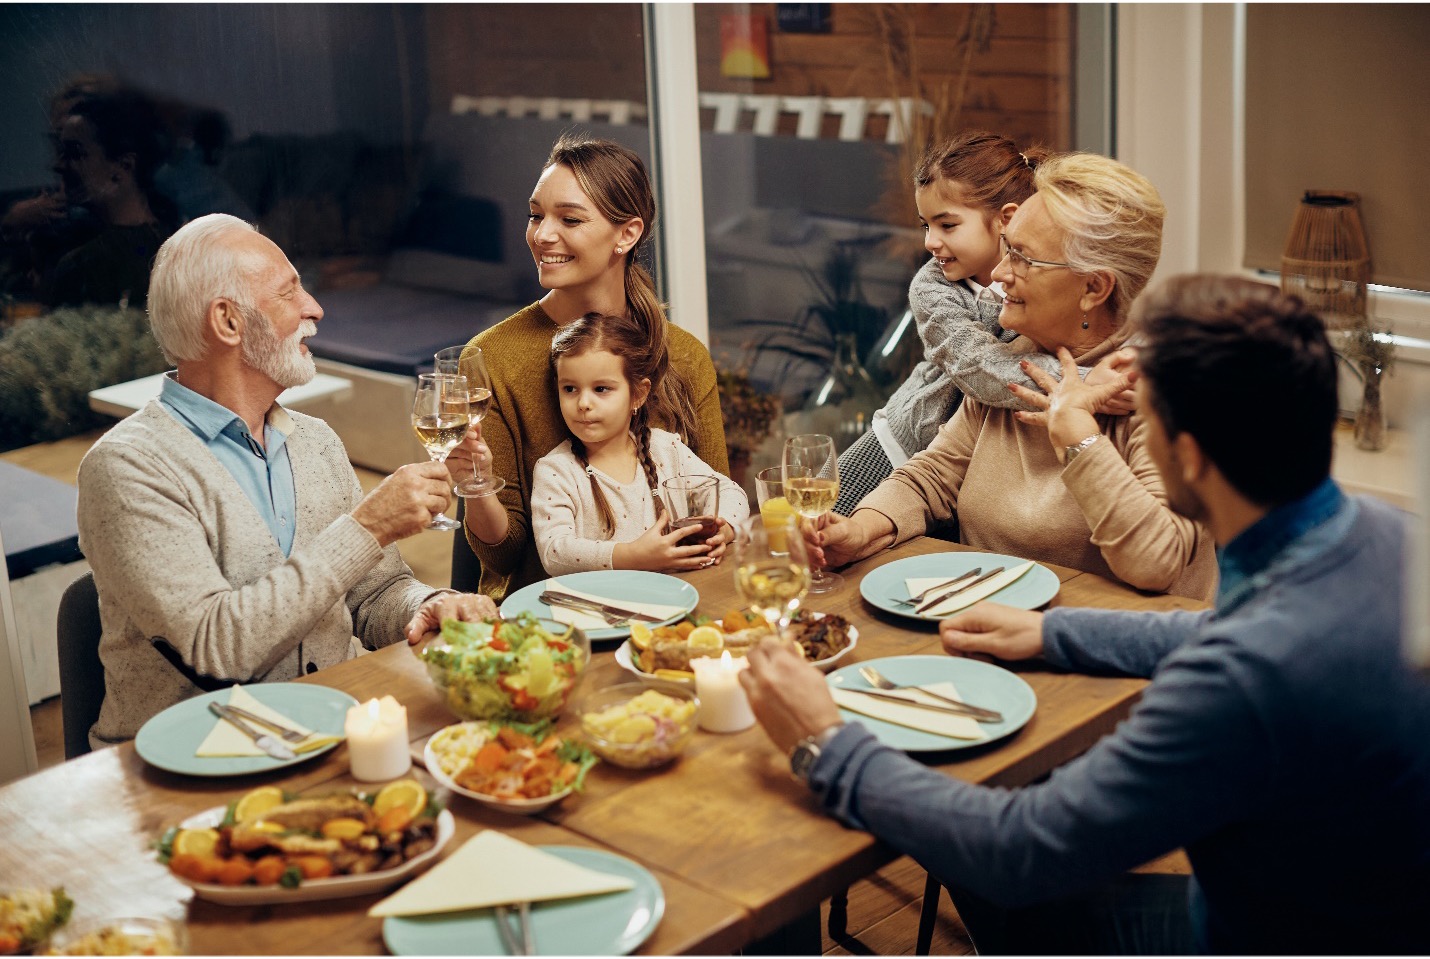 خوردن غذا در کنار دوستان و خانواده بخش مهمی از یک الگوی غذایی مدیترانه ای